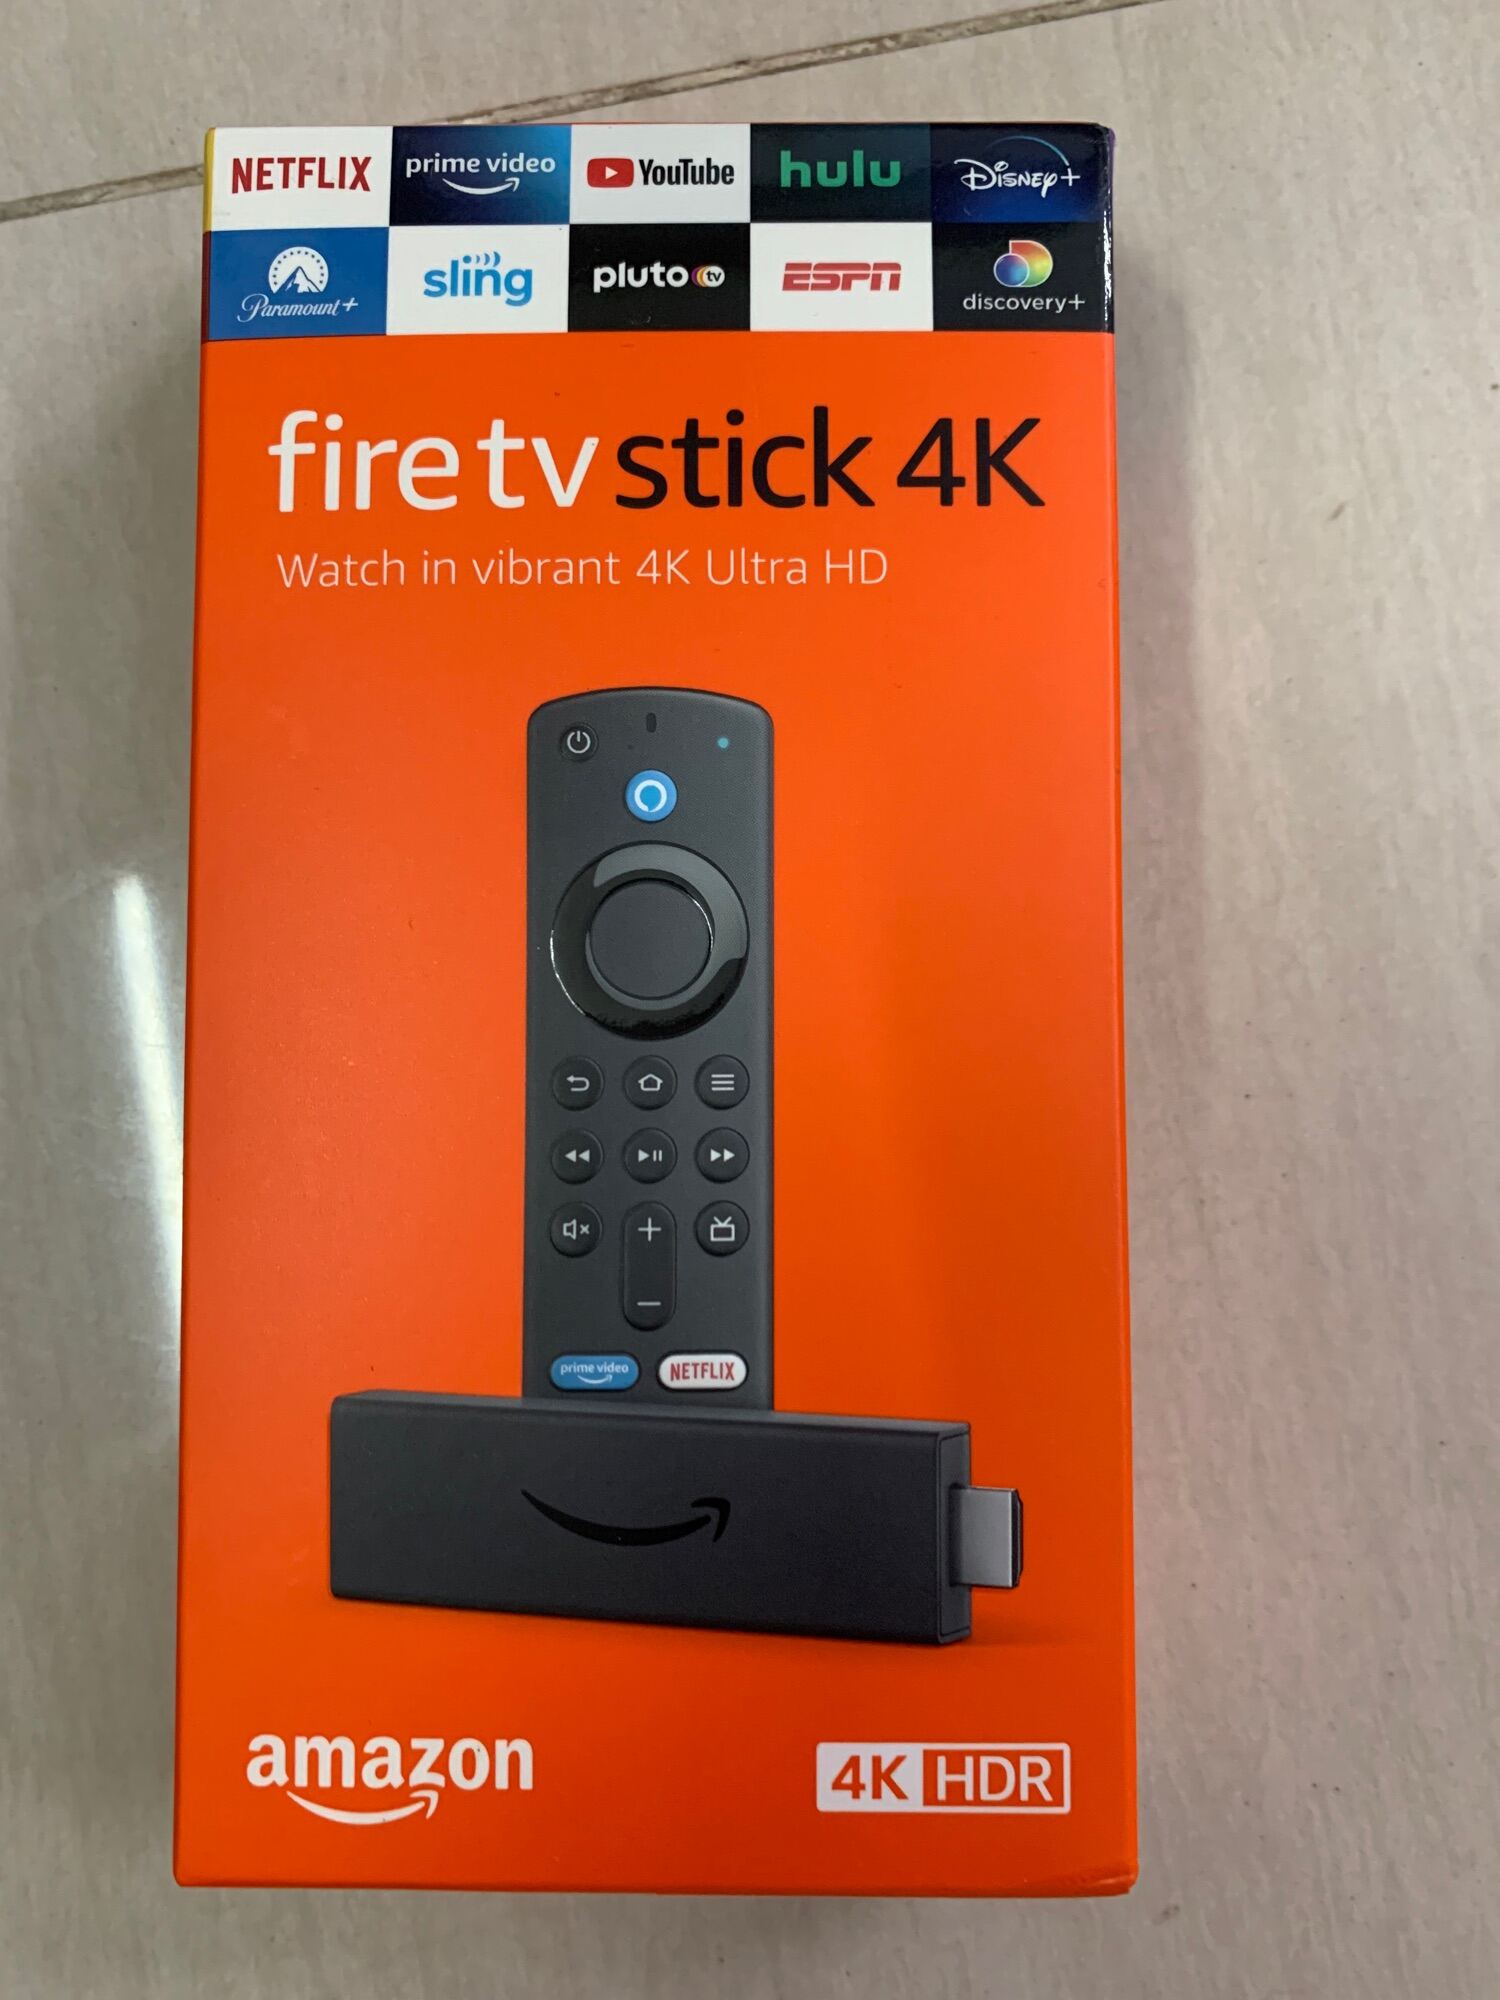 Fire TV Stick 4K mới nhất trợ lý ảo Alexa